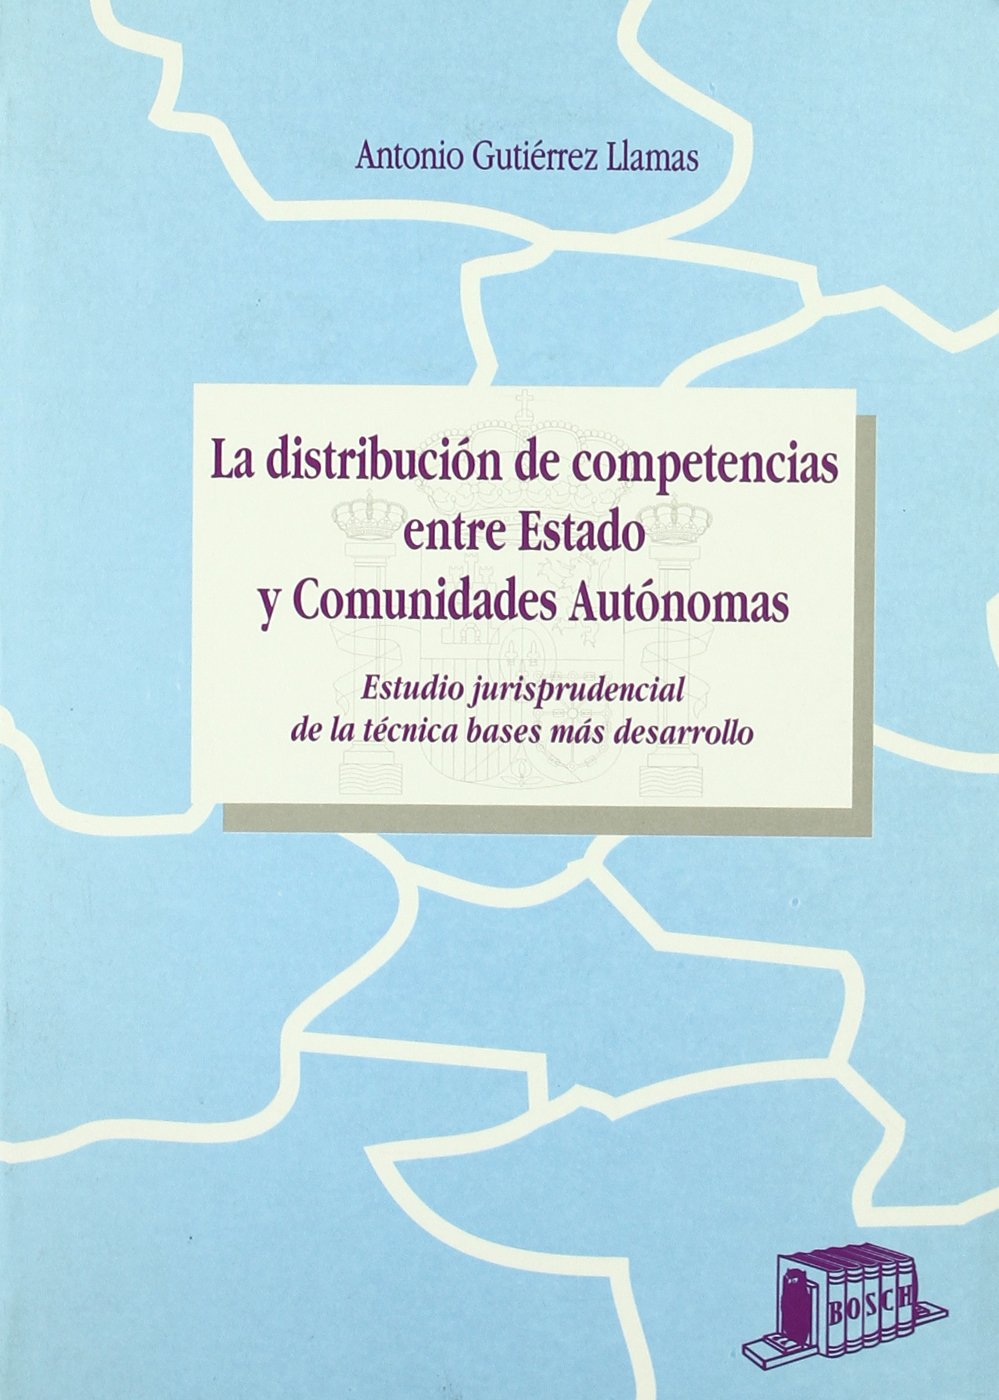 La distribución de competencias entre Estado y Comunidades Autonomas